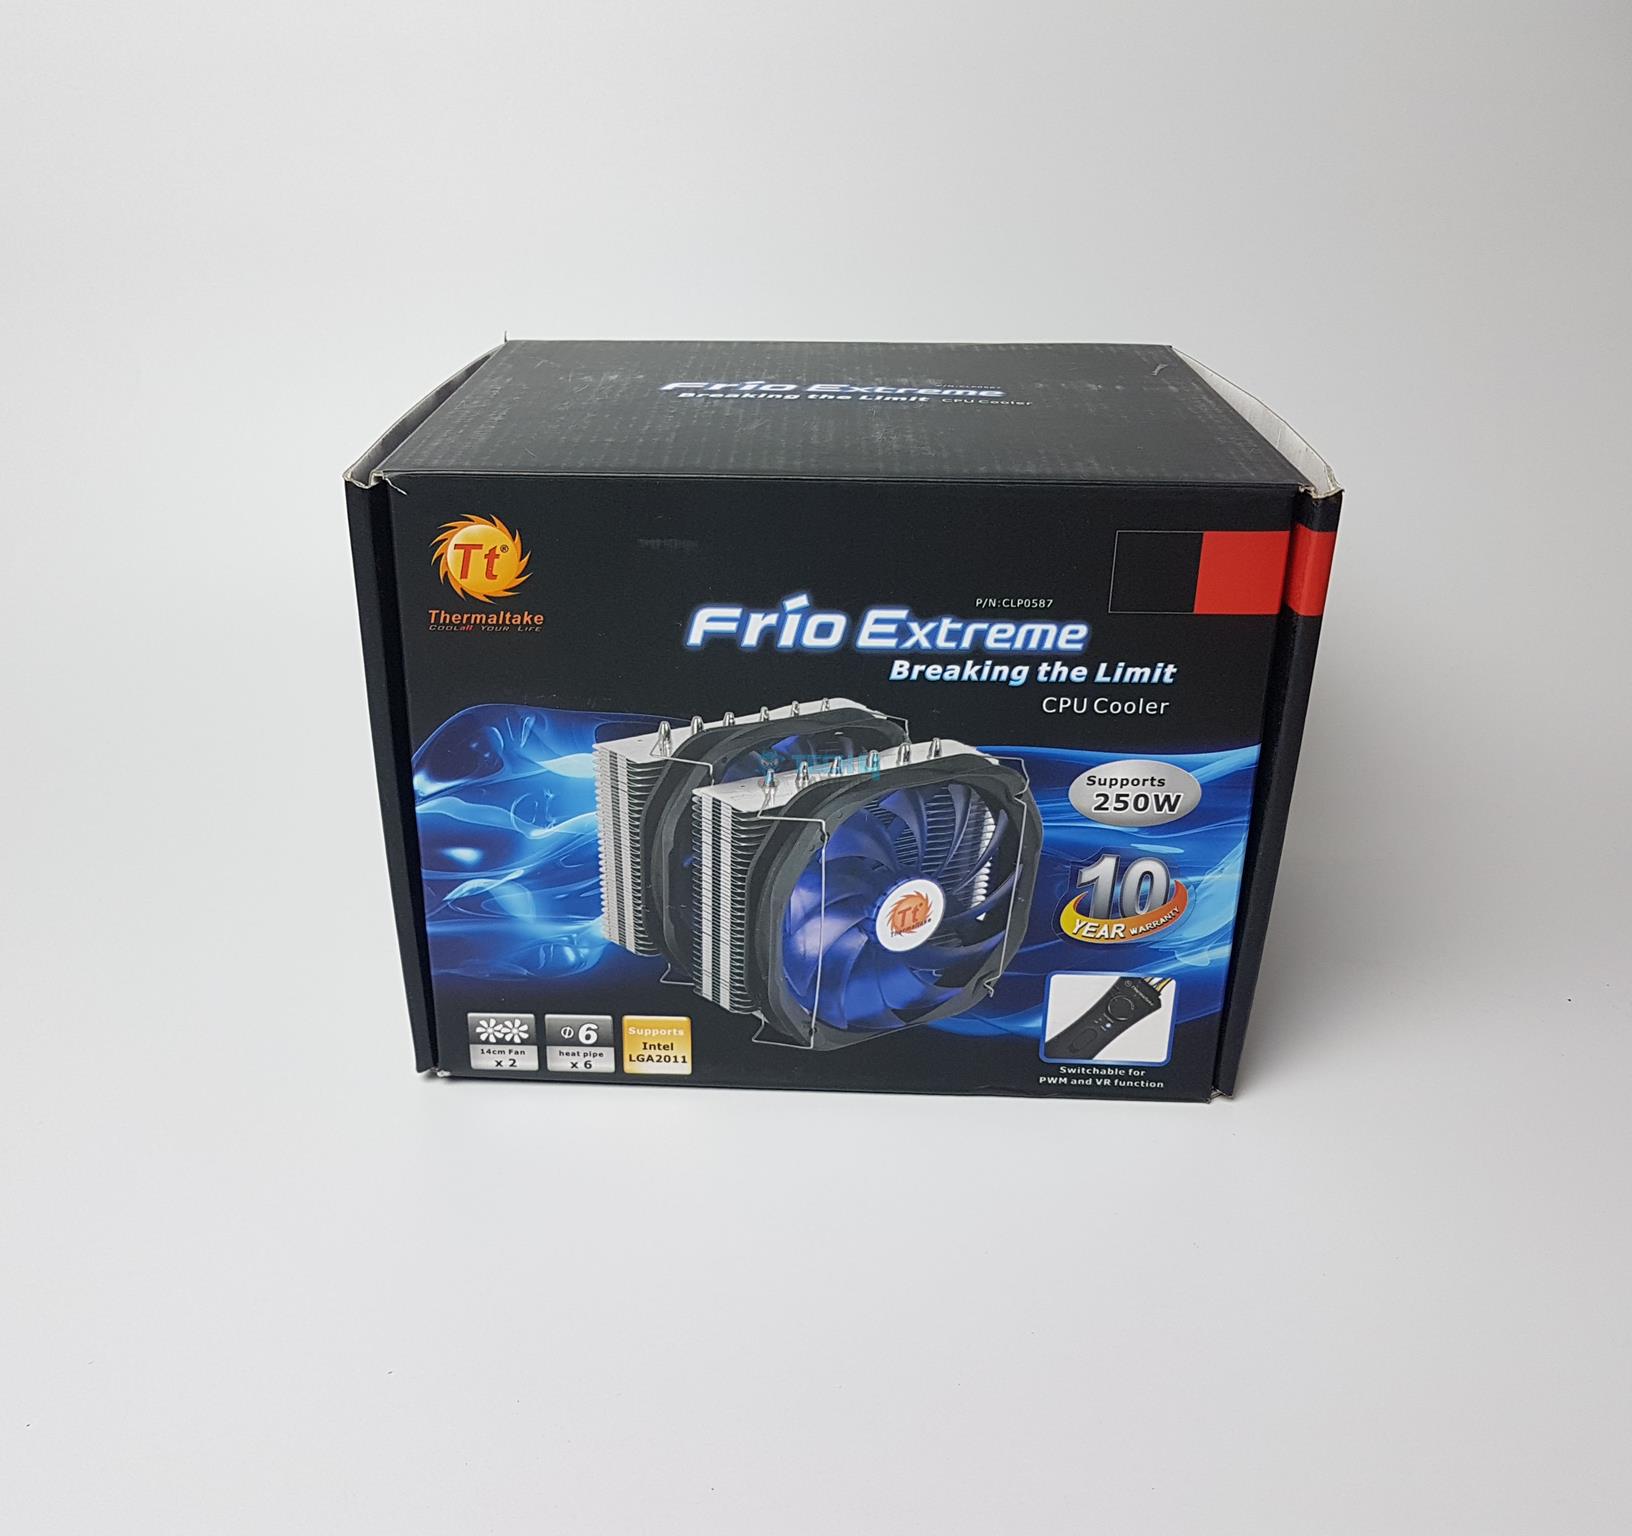 Thermaltake Frio Extreme Packaging